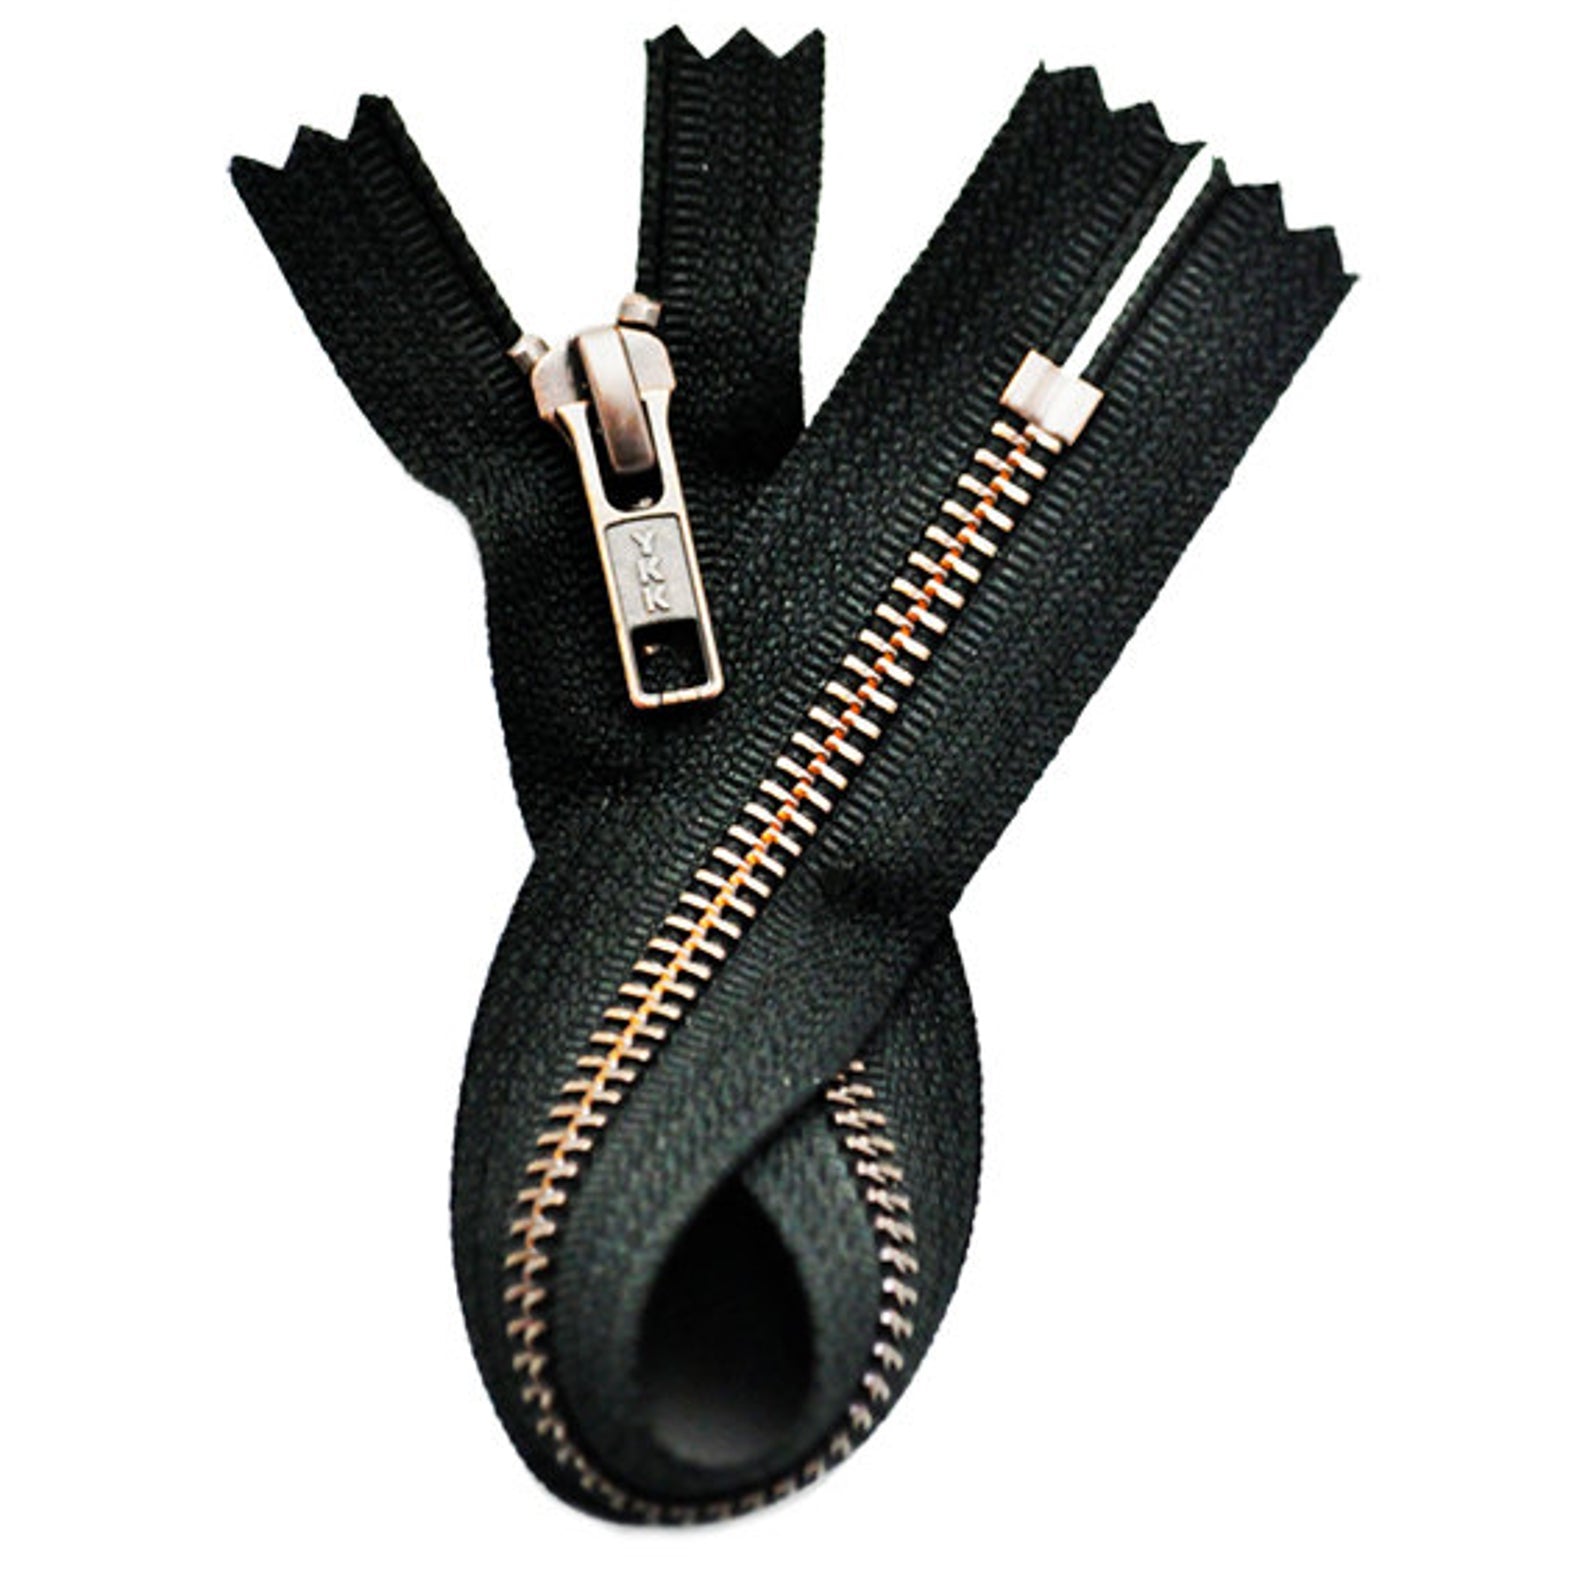 High End YKK Zippers Finest Quality Zipper-36 Inch YKK 5 Excella Antique  Brass Zipper Closed Bottom Black 